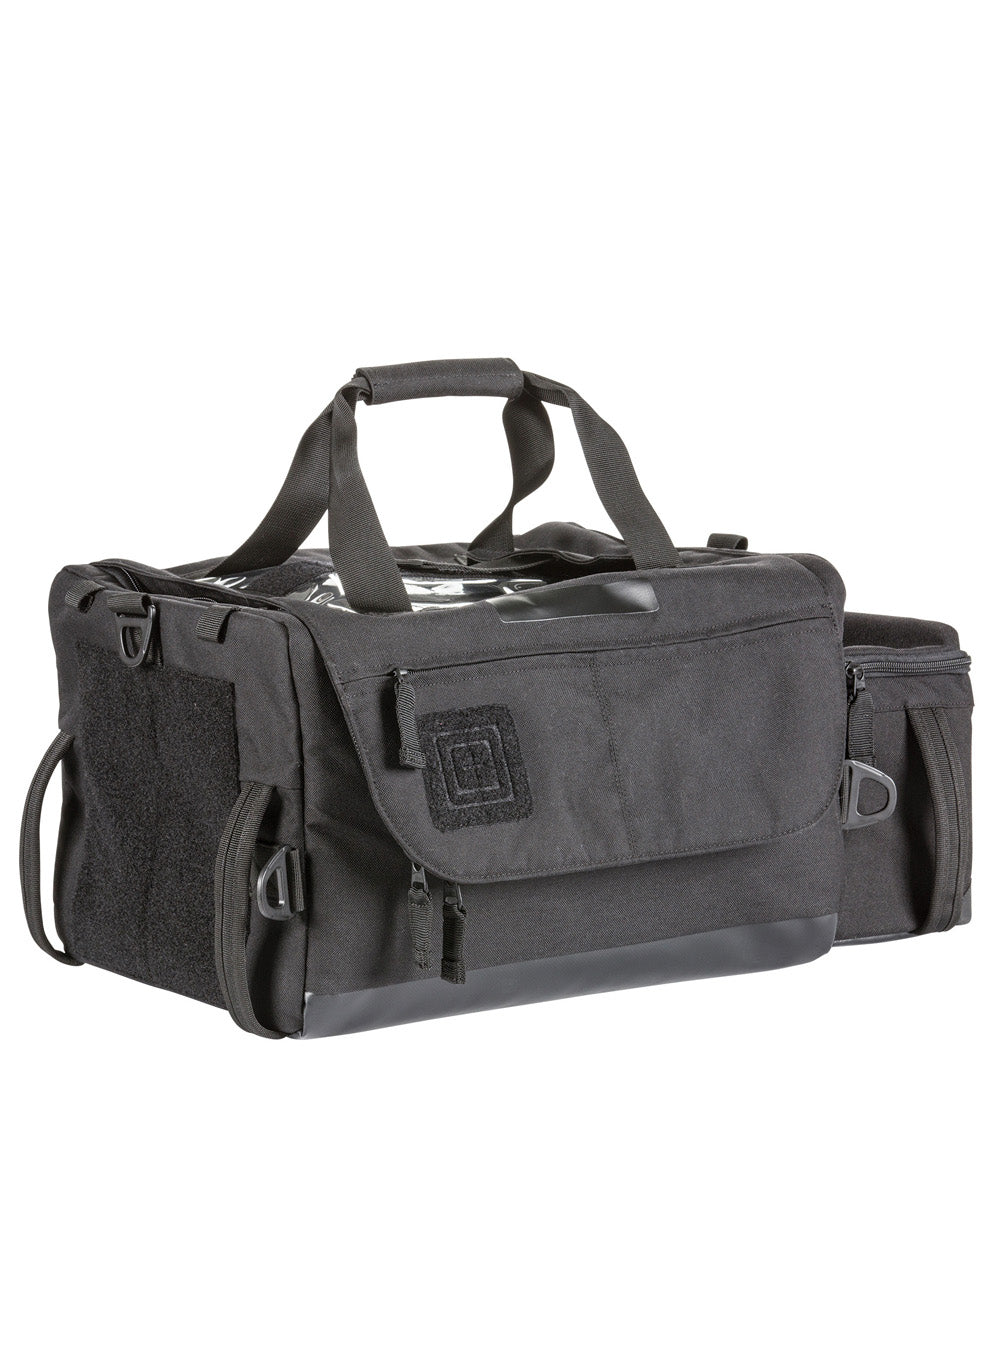 5.11 Tactical ALS/BLS Duffel Bag - TacSource